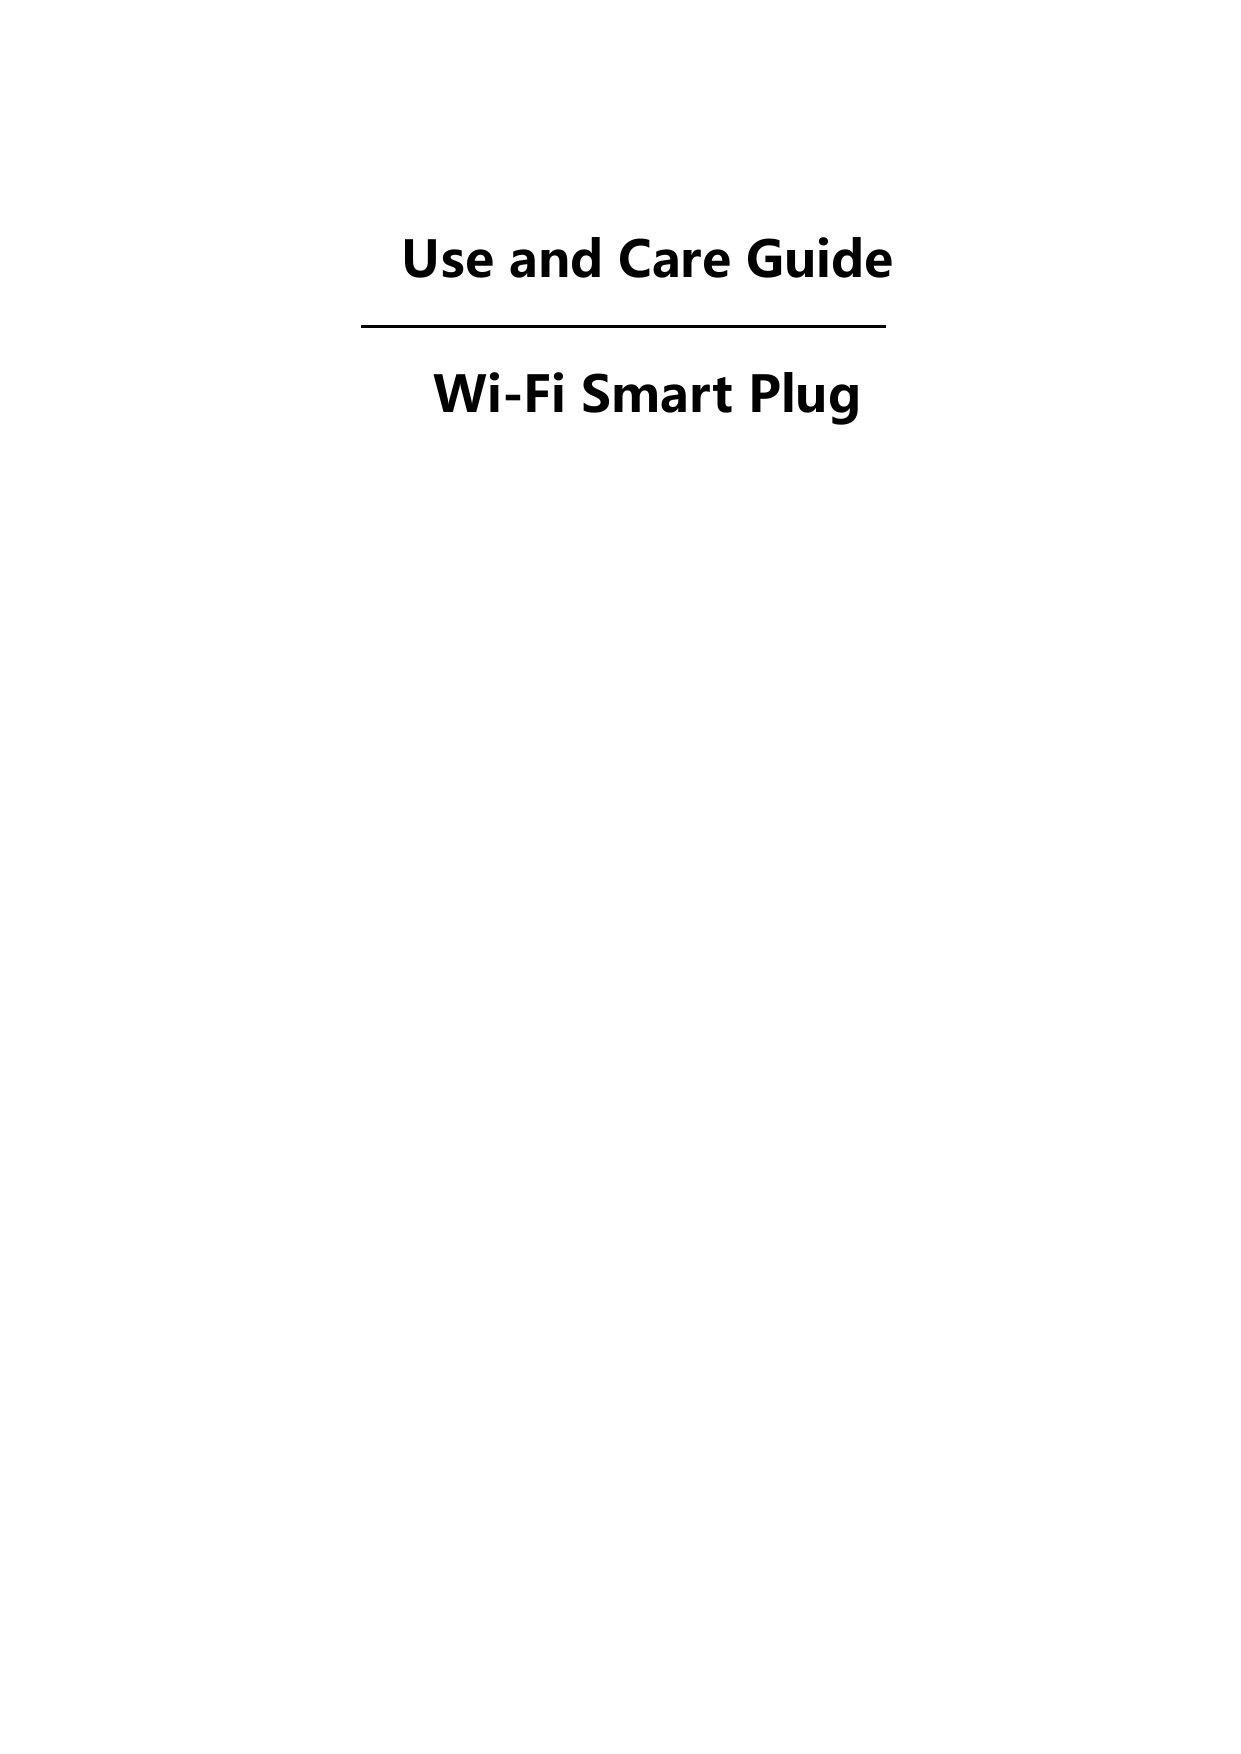   Use and Care Guide Wi-Fi Smart Plug                             